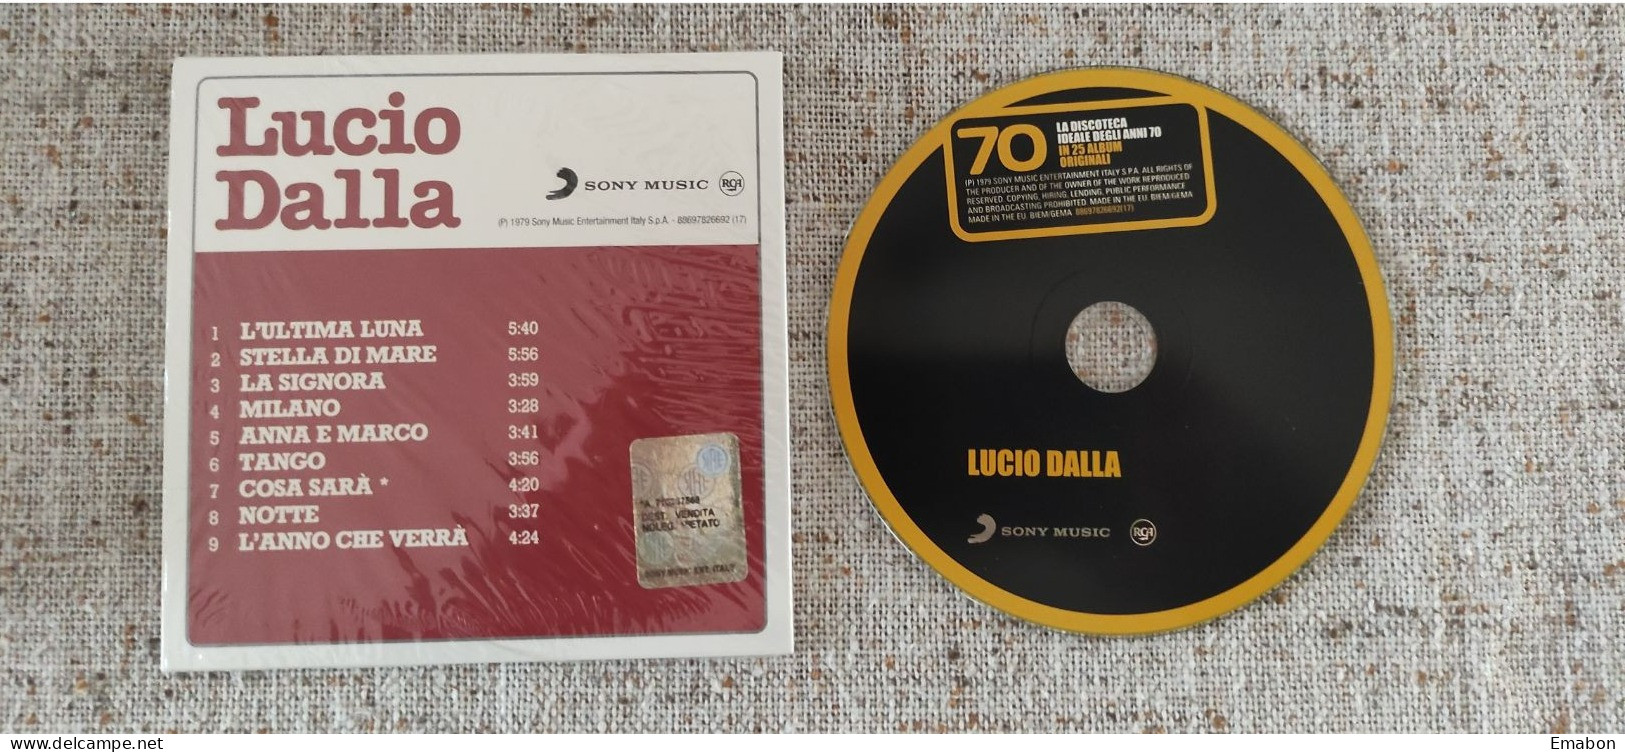 BORGATTA - ITALIANA  - Cd LUCIO DALLA  - LUCIO DALLA - SONY MUSIC 1979 -  USATO In Buono Stato - Other - Italian Music